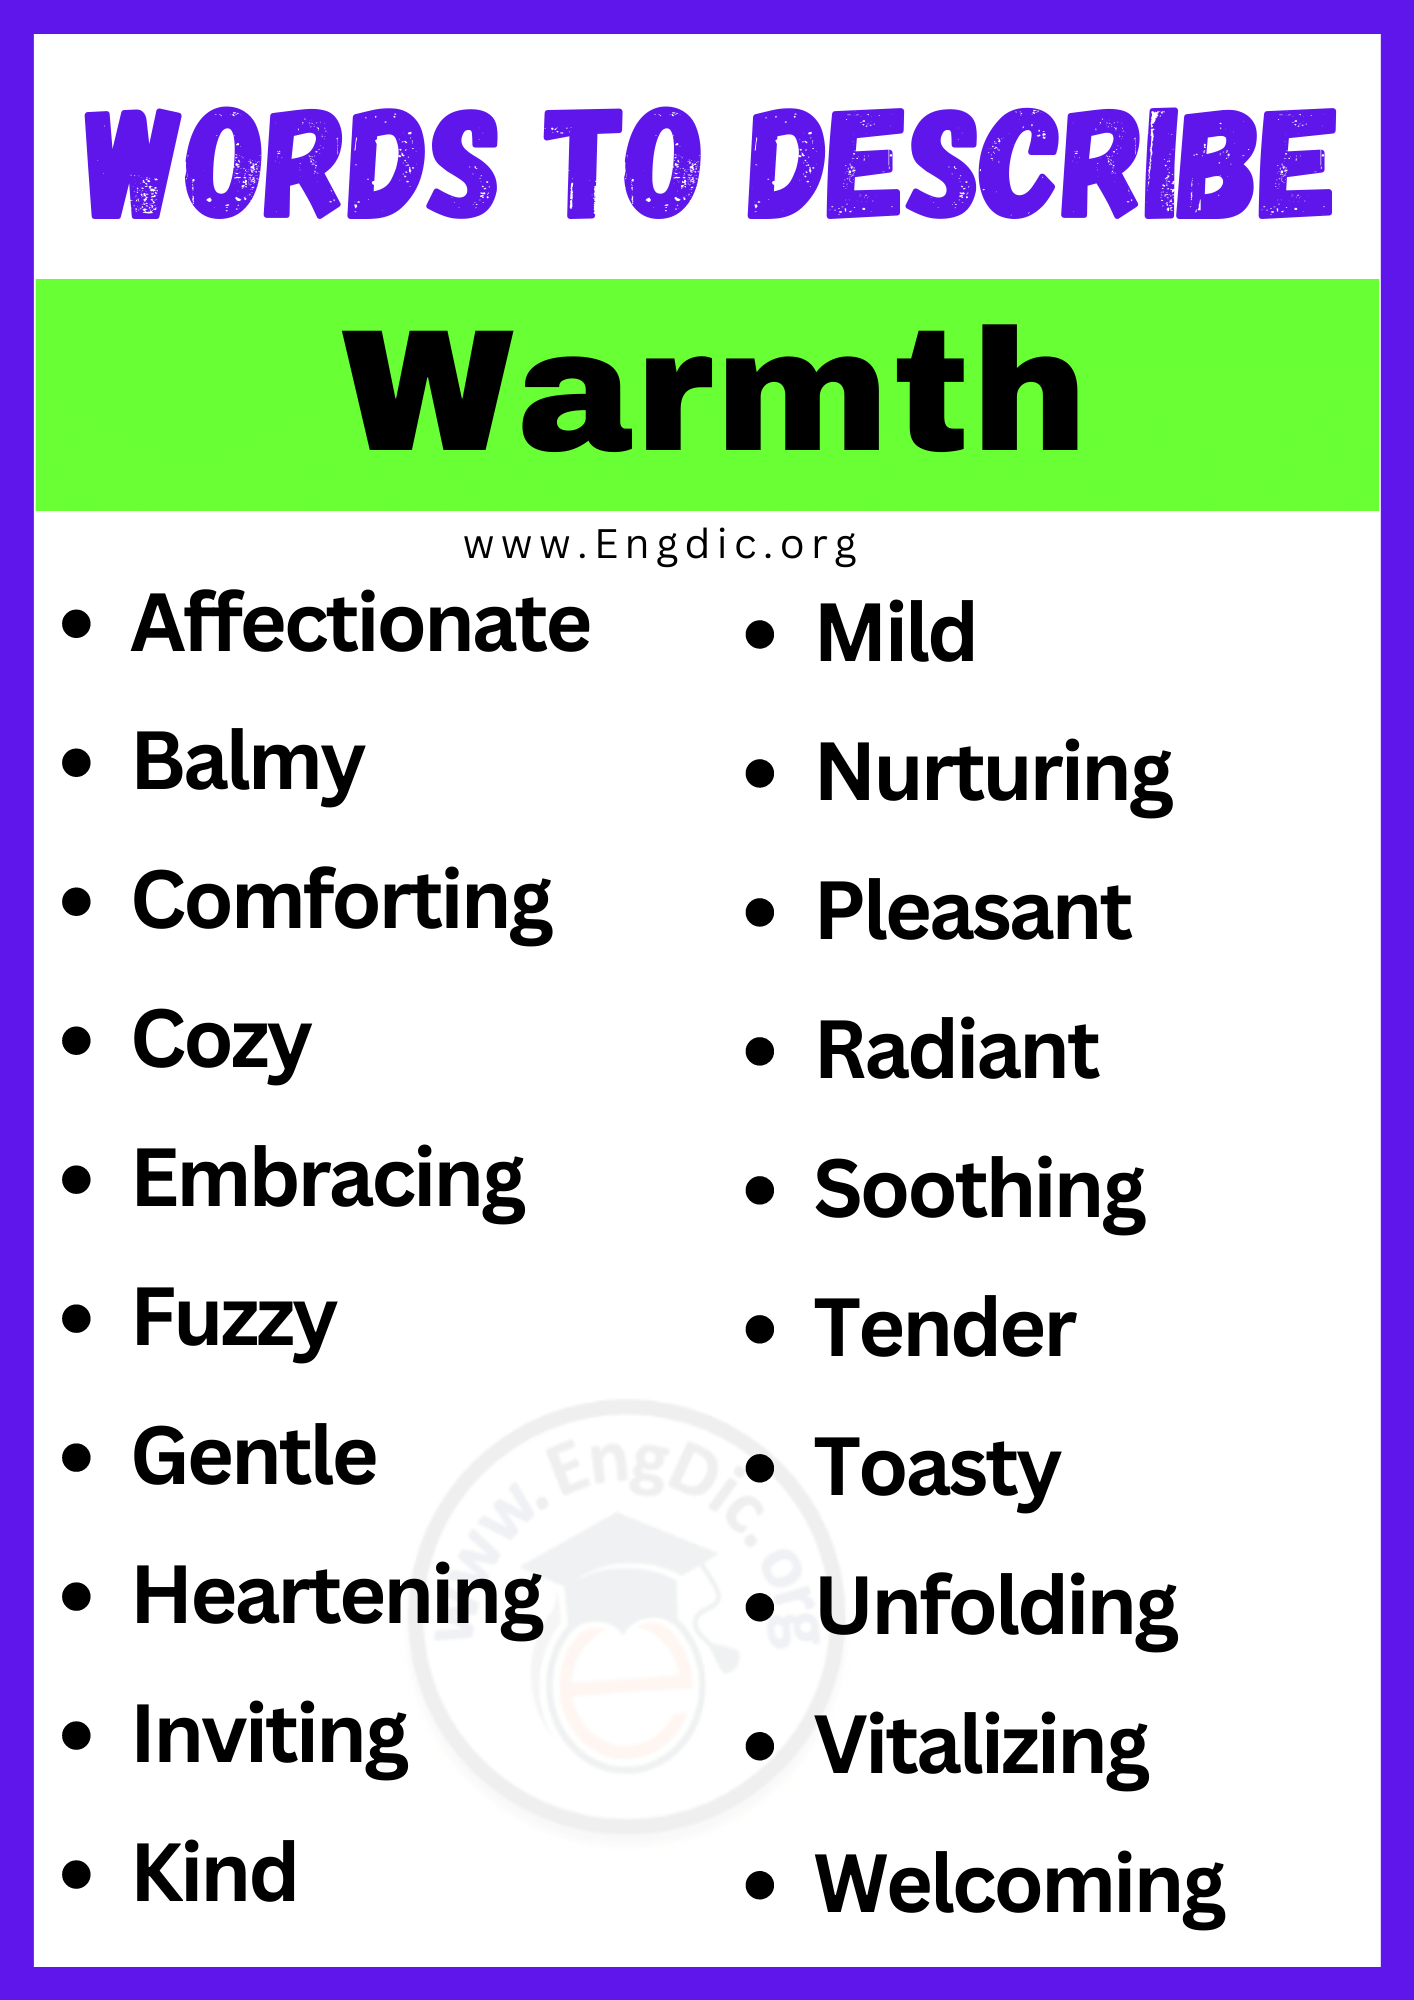 Words to Describe Warmth